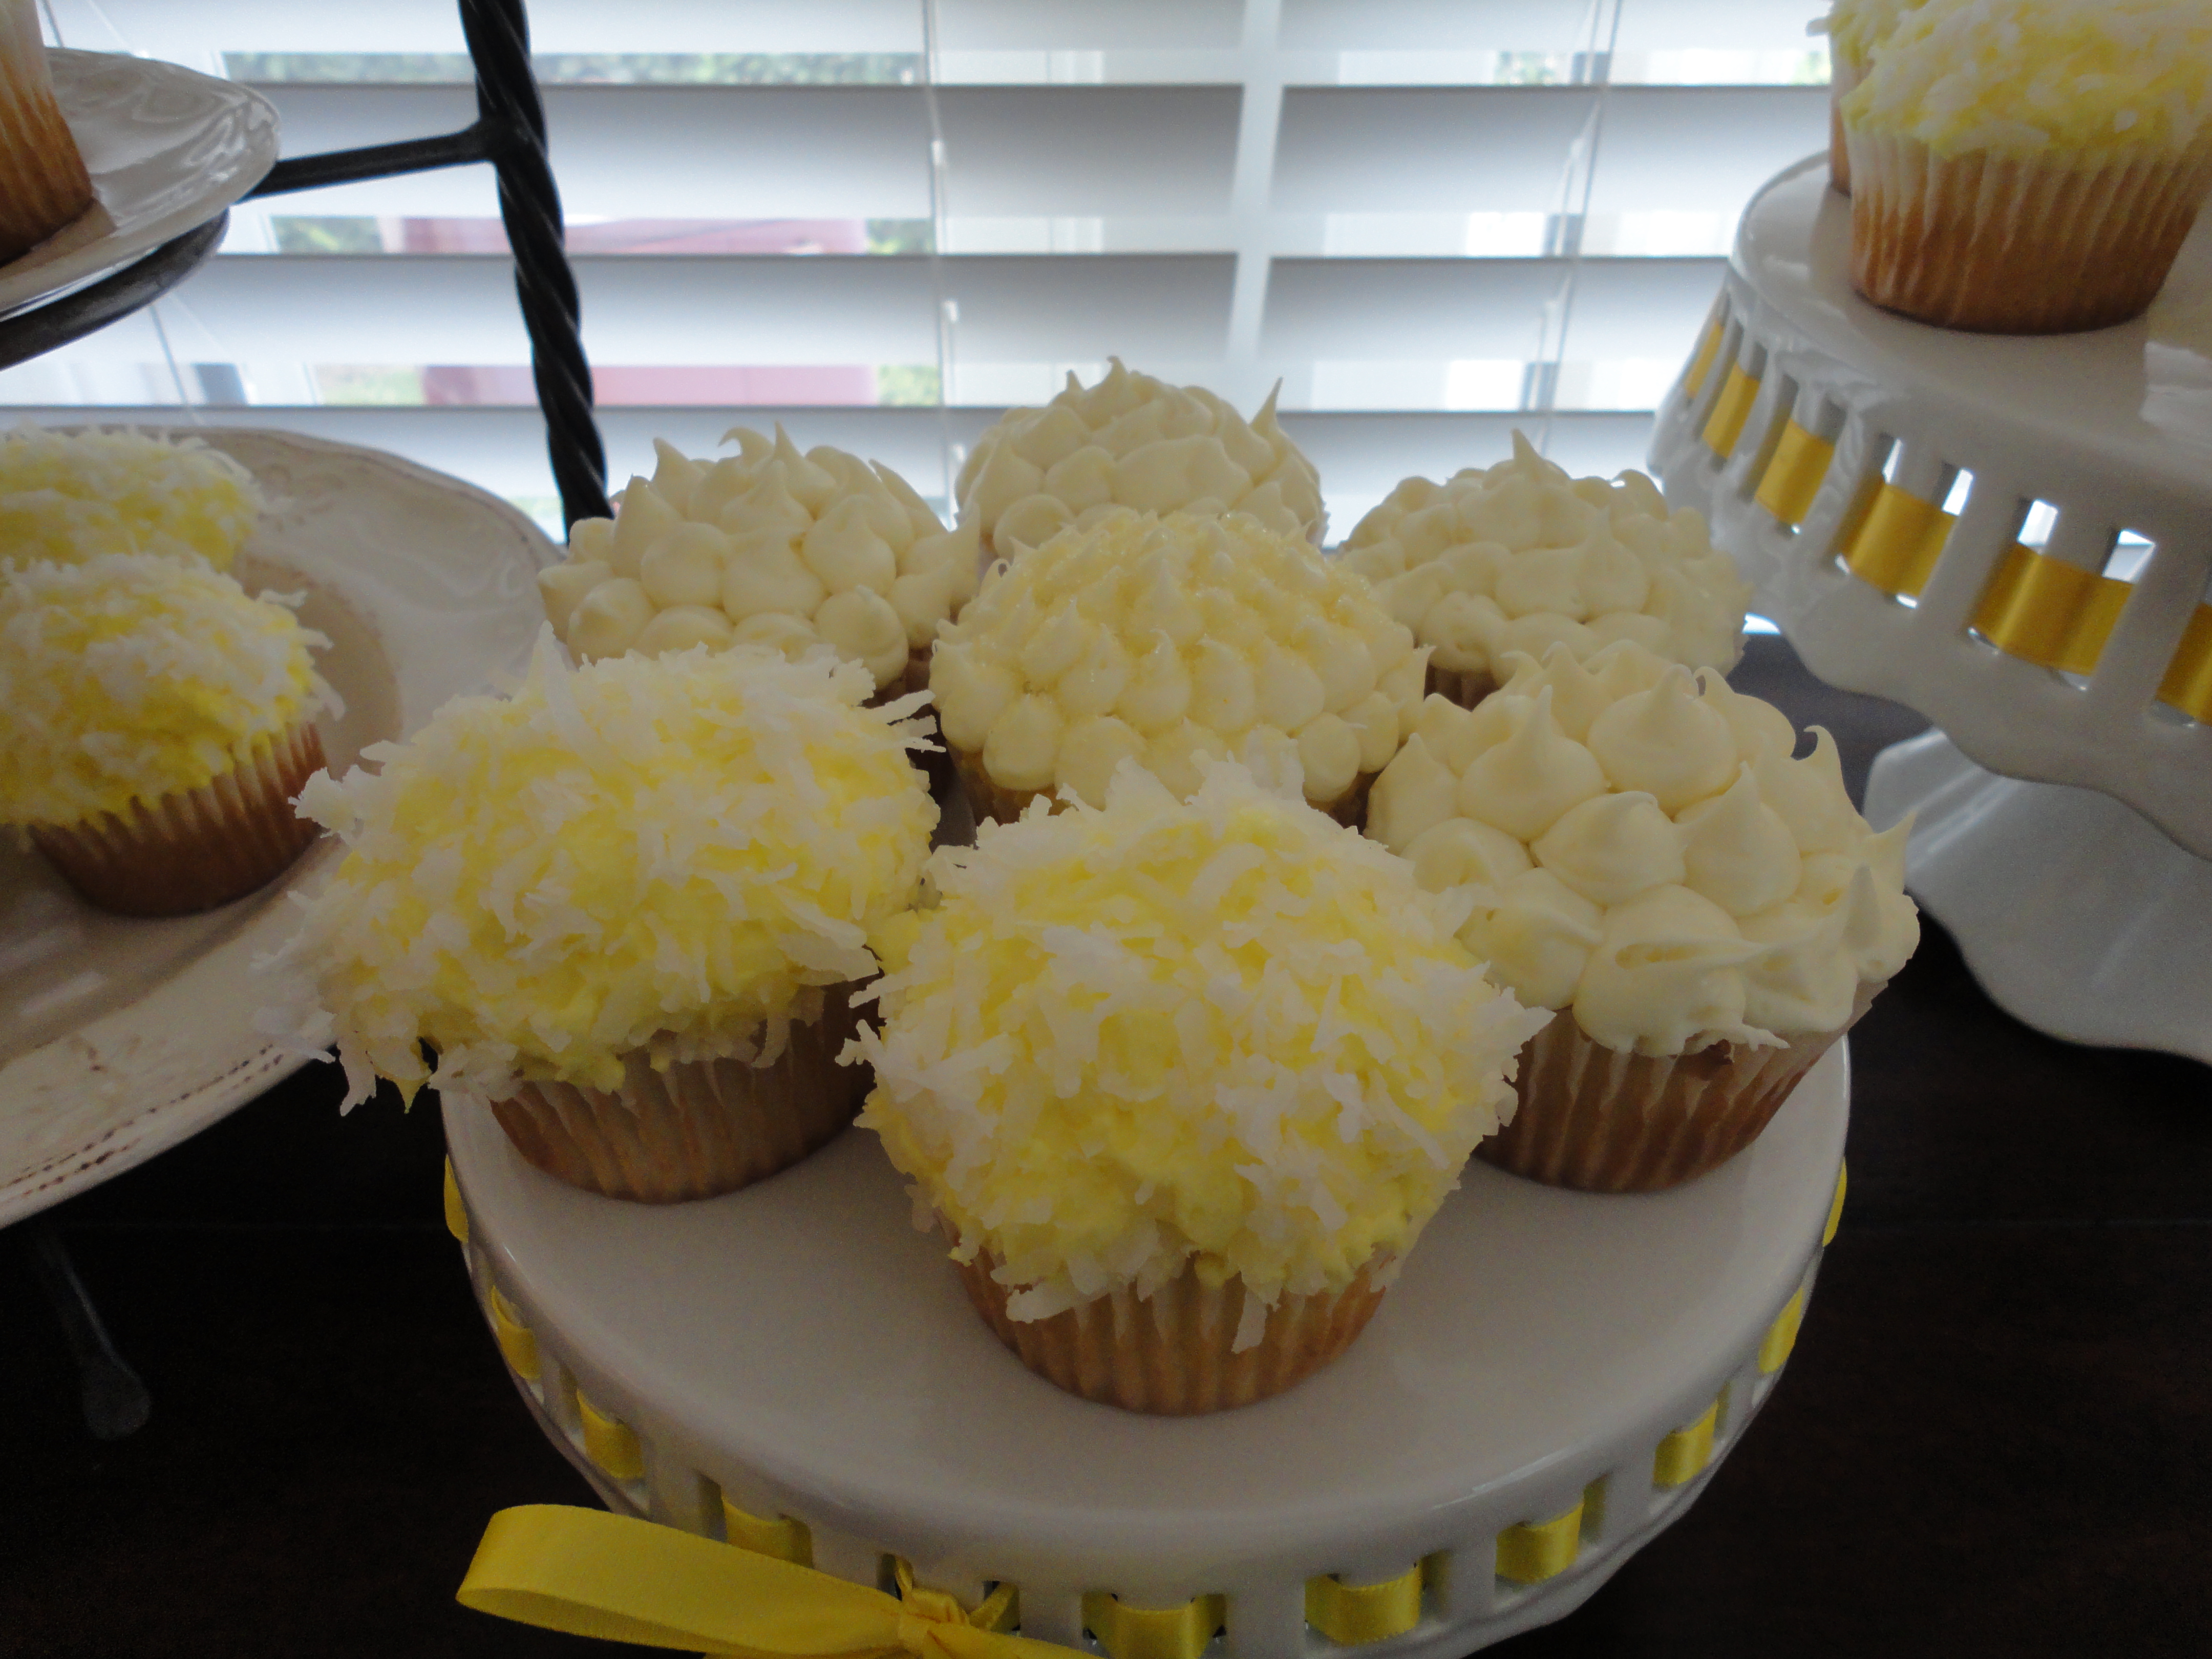 Lemon buttercream frosting on cupcakes